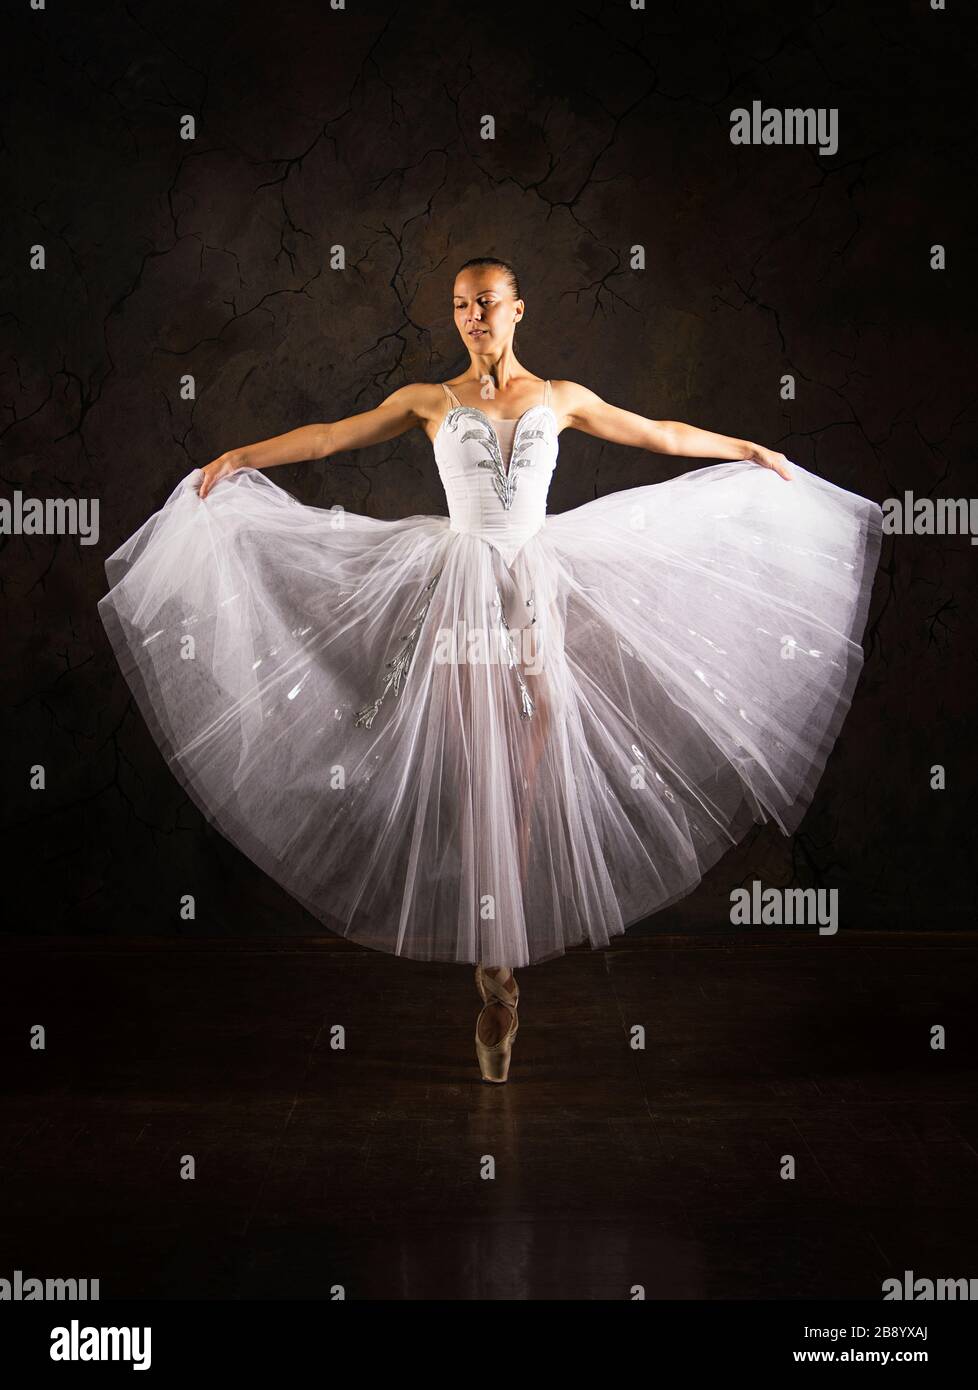 Femme mince dans un corset blanc tutu danse ballet. Prise de vue en studio  sur fond sombre, images isolées Photo Stock - Alamy